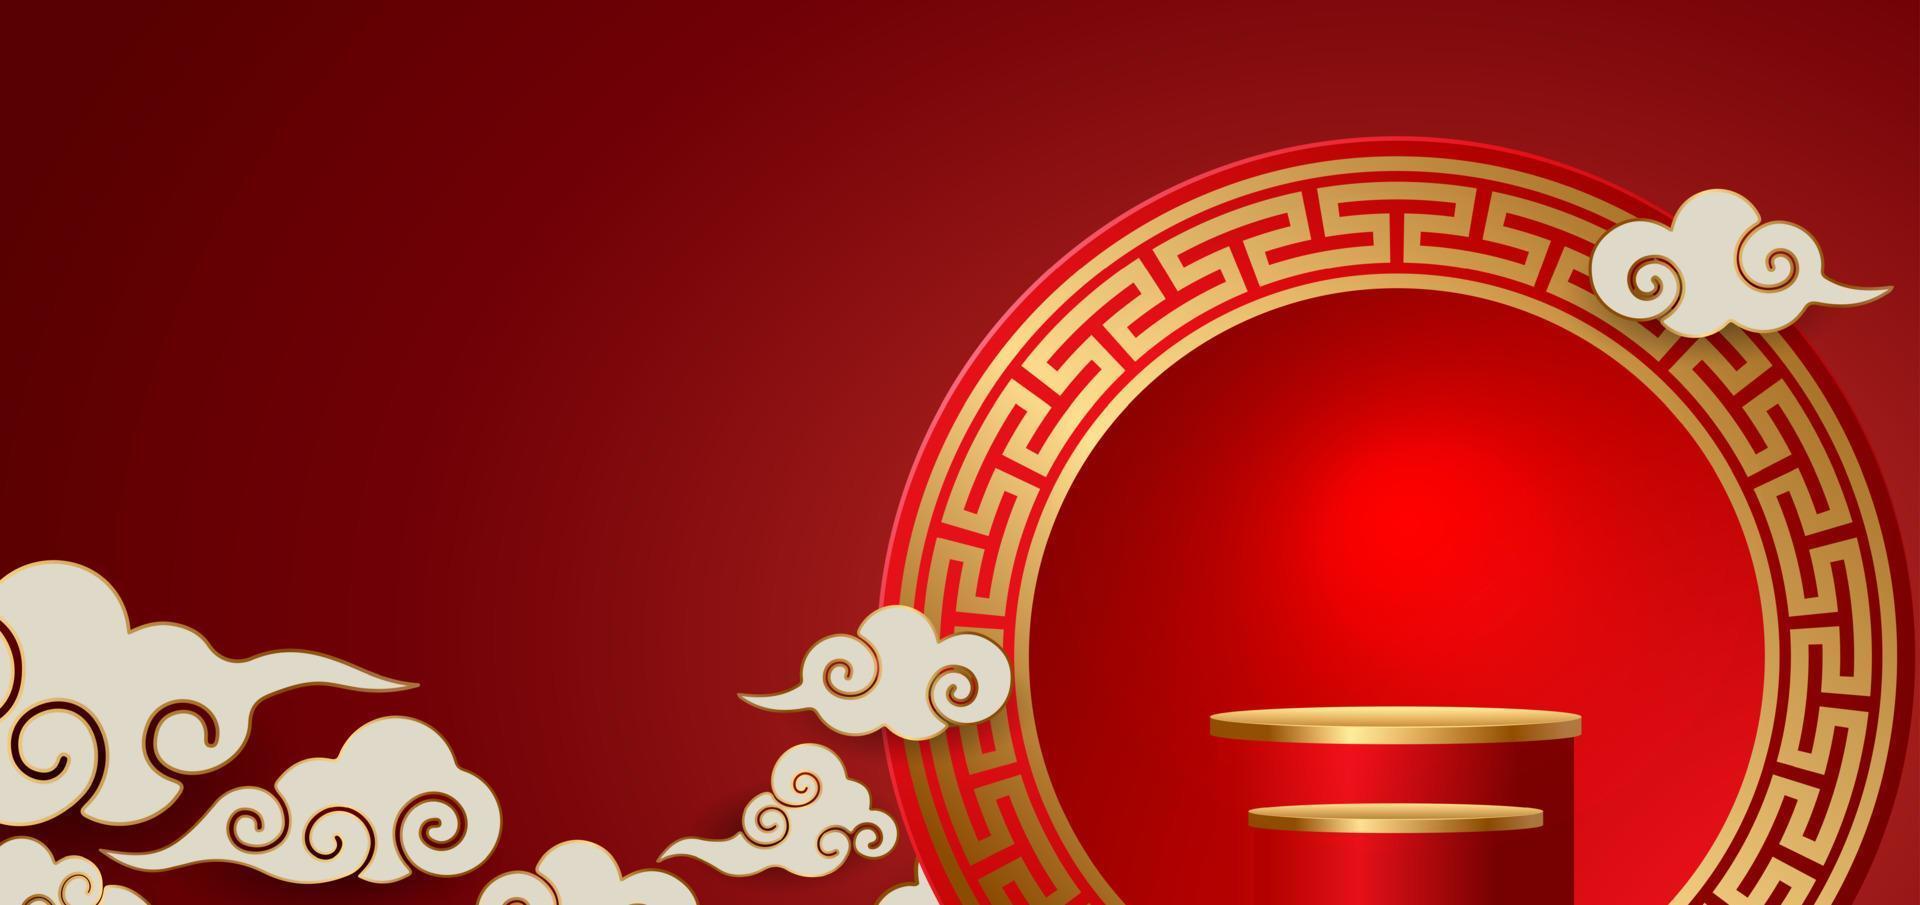 pódio e fundo para o ano novo chinês, festivais chineses, festival do meio do outono, flores e elementos asiáticos no fundo. vetor